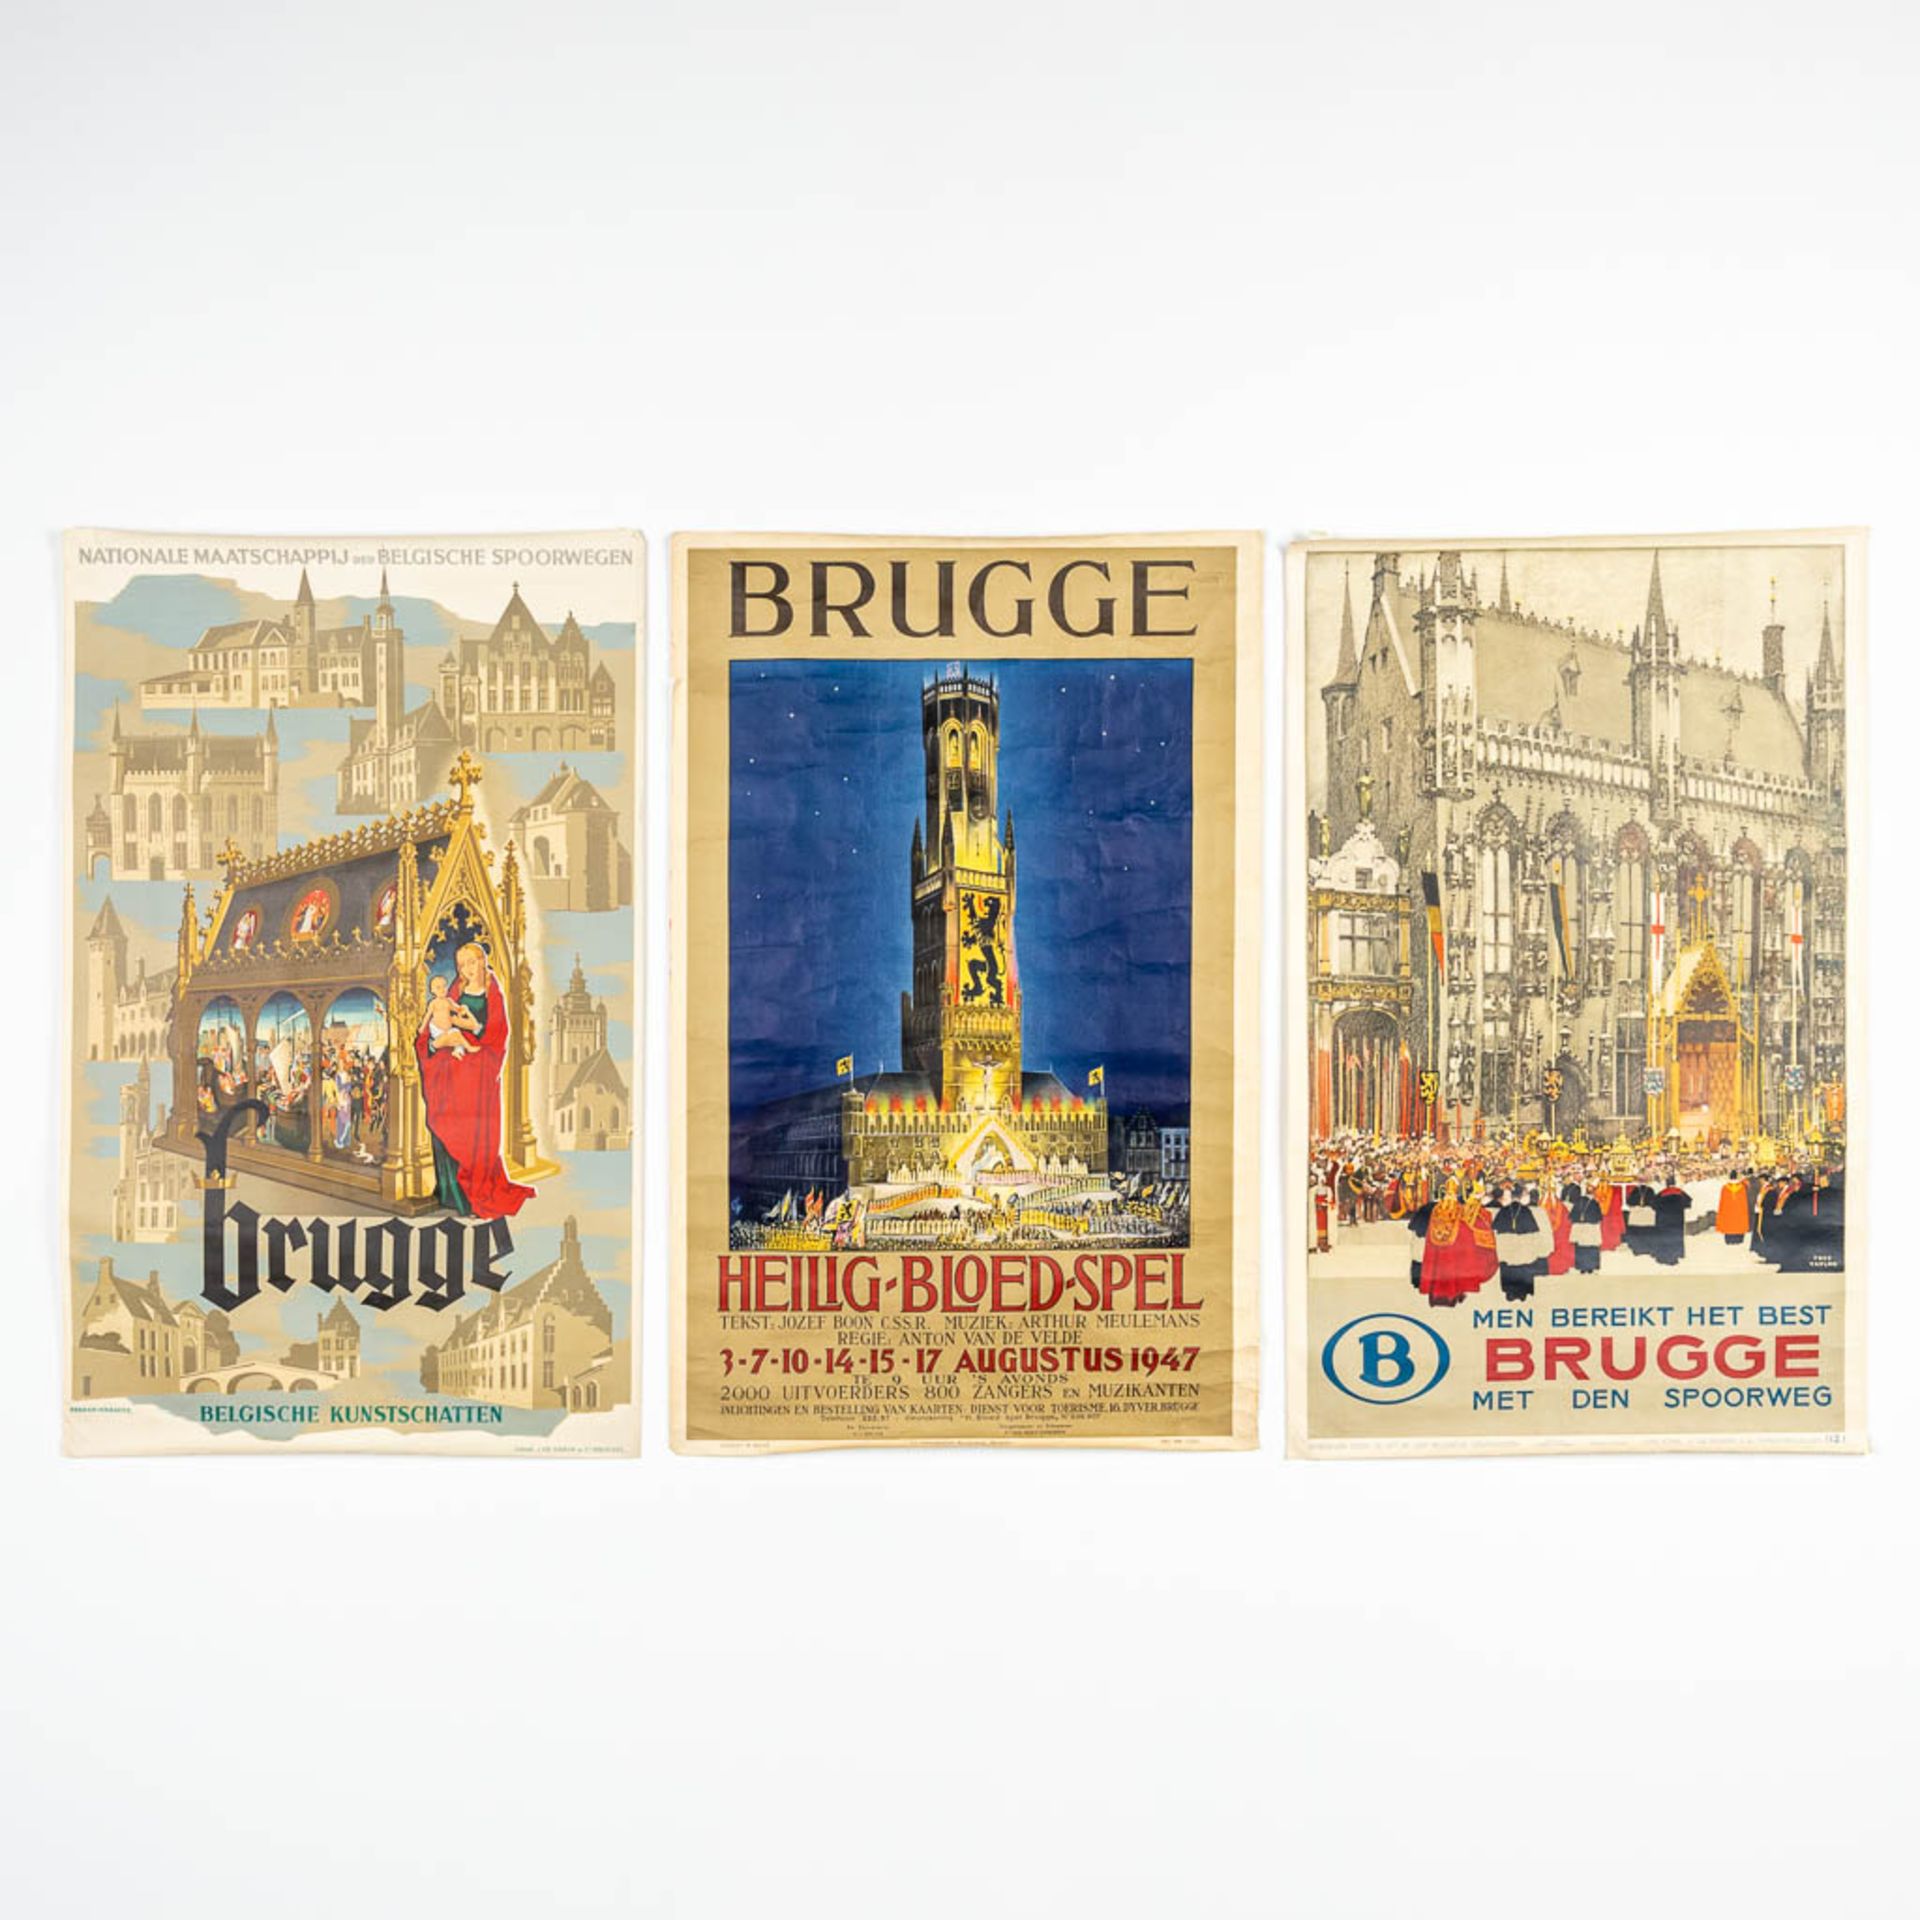 A collection of 3 vintage postersÊ'Brugge' - 'Brugge Heilig Bloed Spel' 'Men bereikt het best Brugge